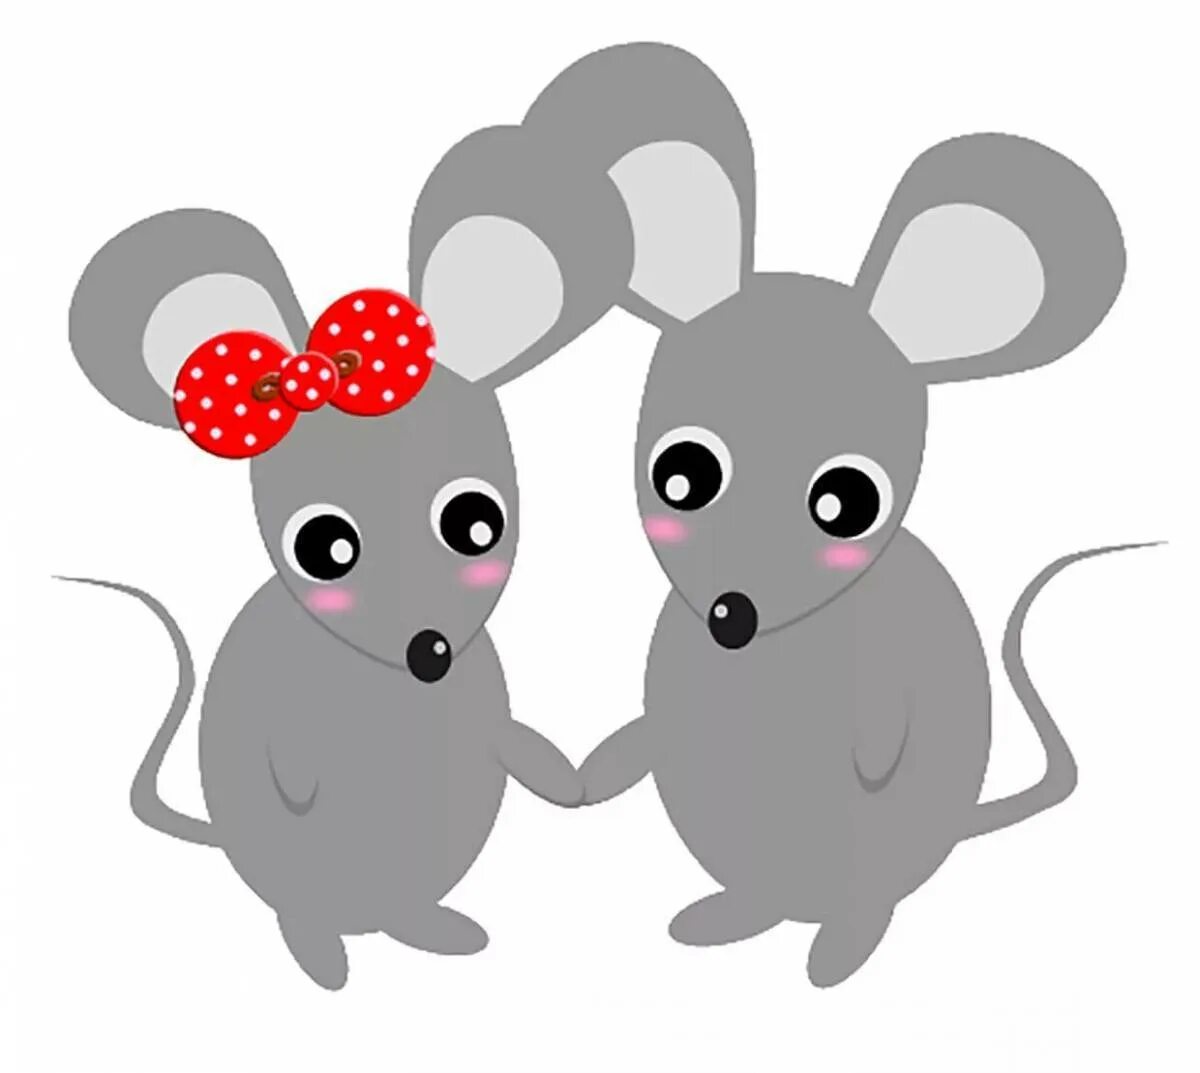 Картинка мышки. Мышка рисунок. Мышка картинка для детей. Мышка рисунок для детей. Два мышонка.